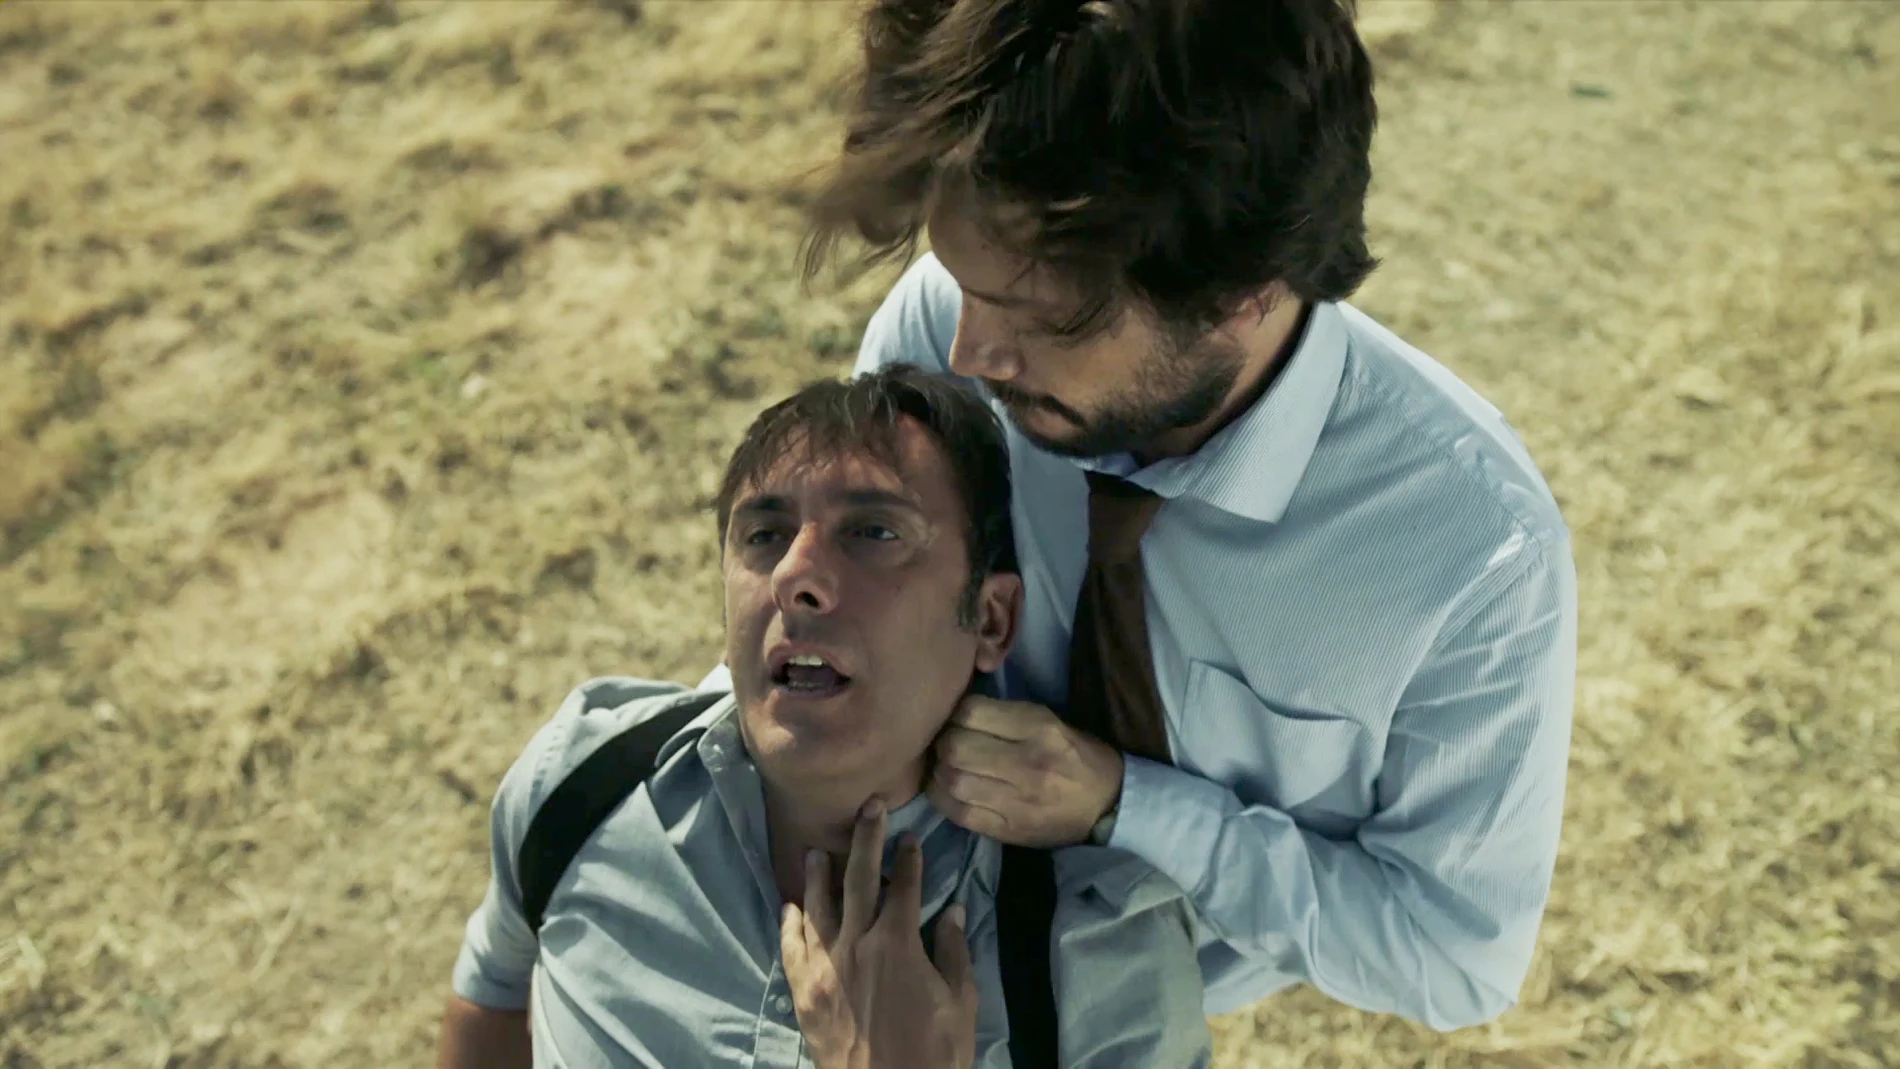 El Profesor se enfrenta cara a cara con Alberto, el exmarido de la inspectora